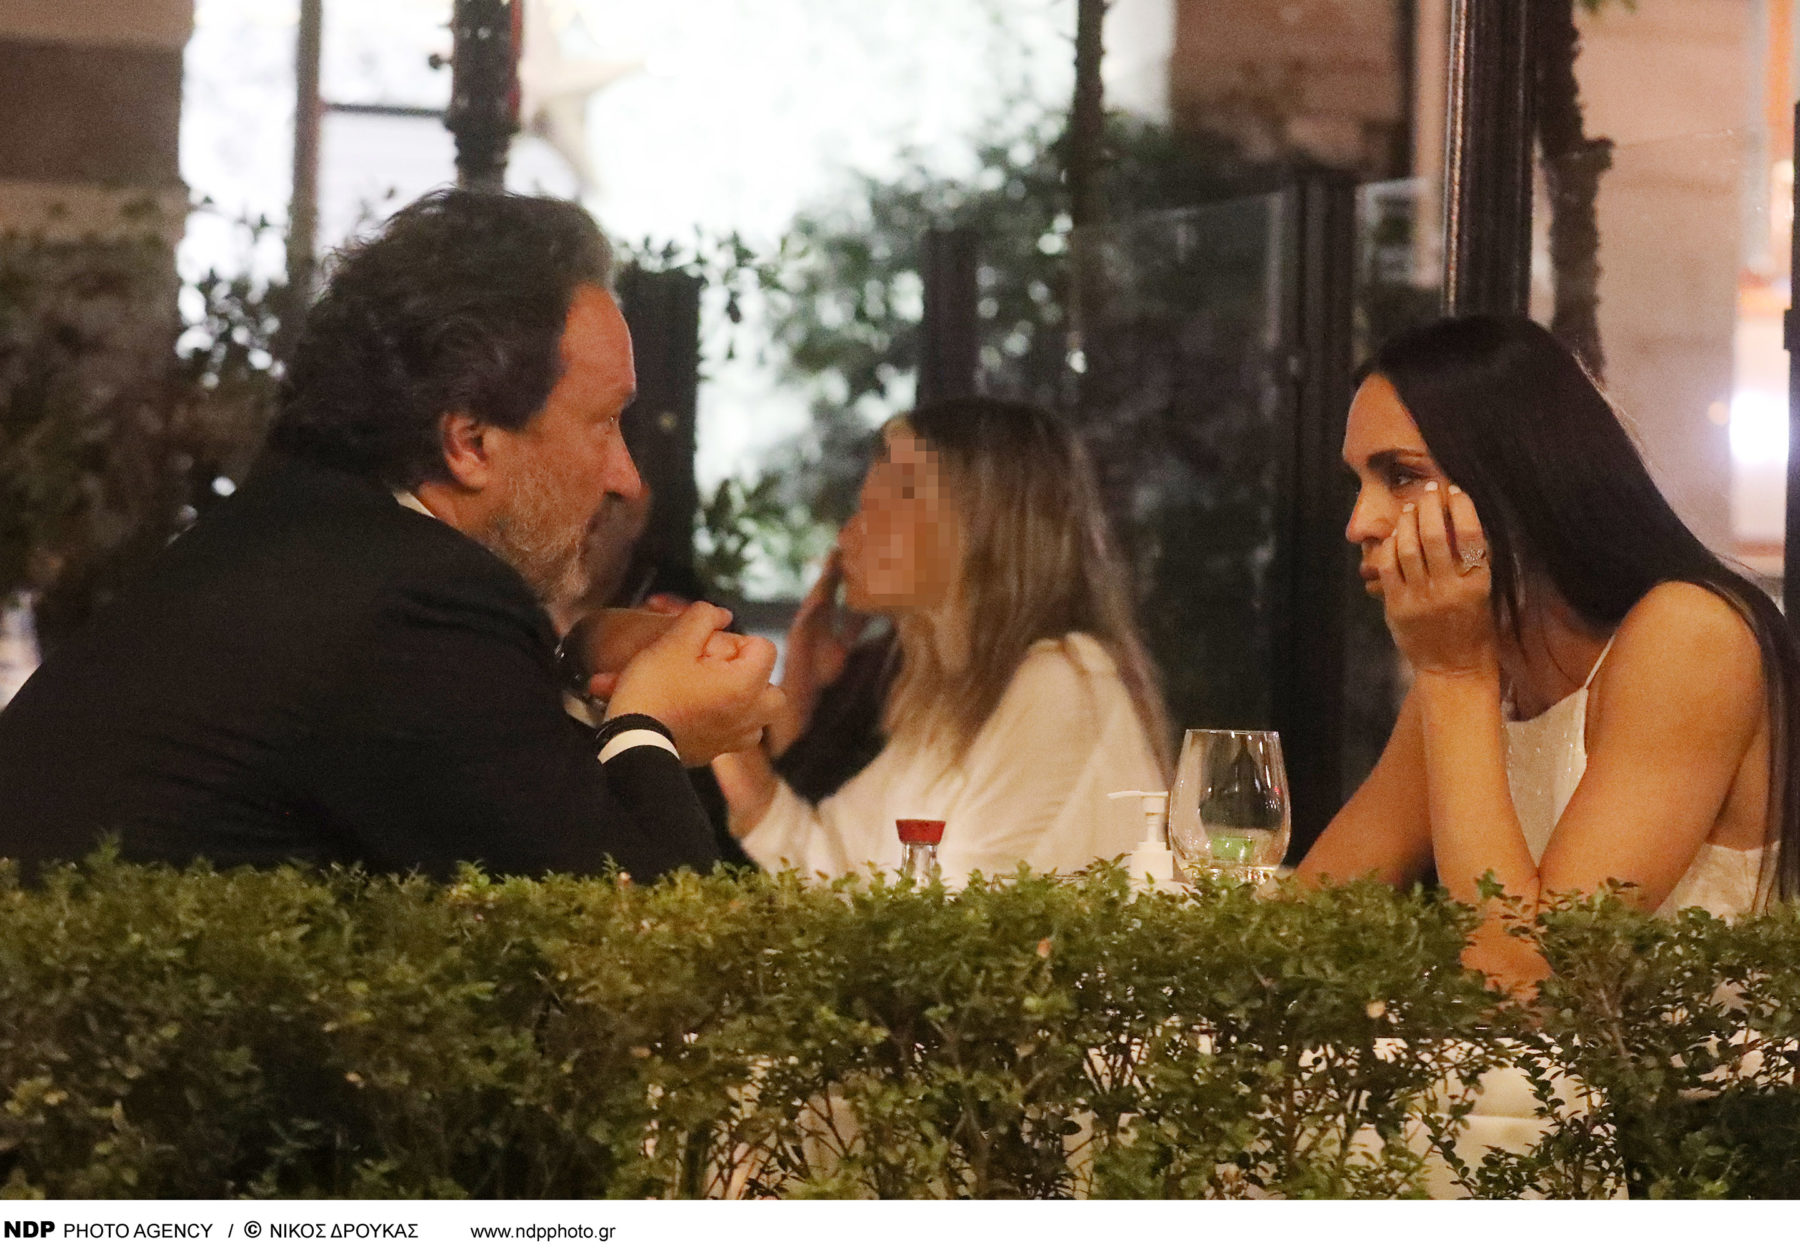 Νικολέττα Καρρά - Διονύσης Παναγιωτάκης: Ρομαντικό δείπνο στο κέντρο της Αθήνας (φωτογραφίες)